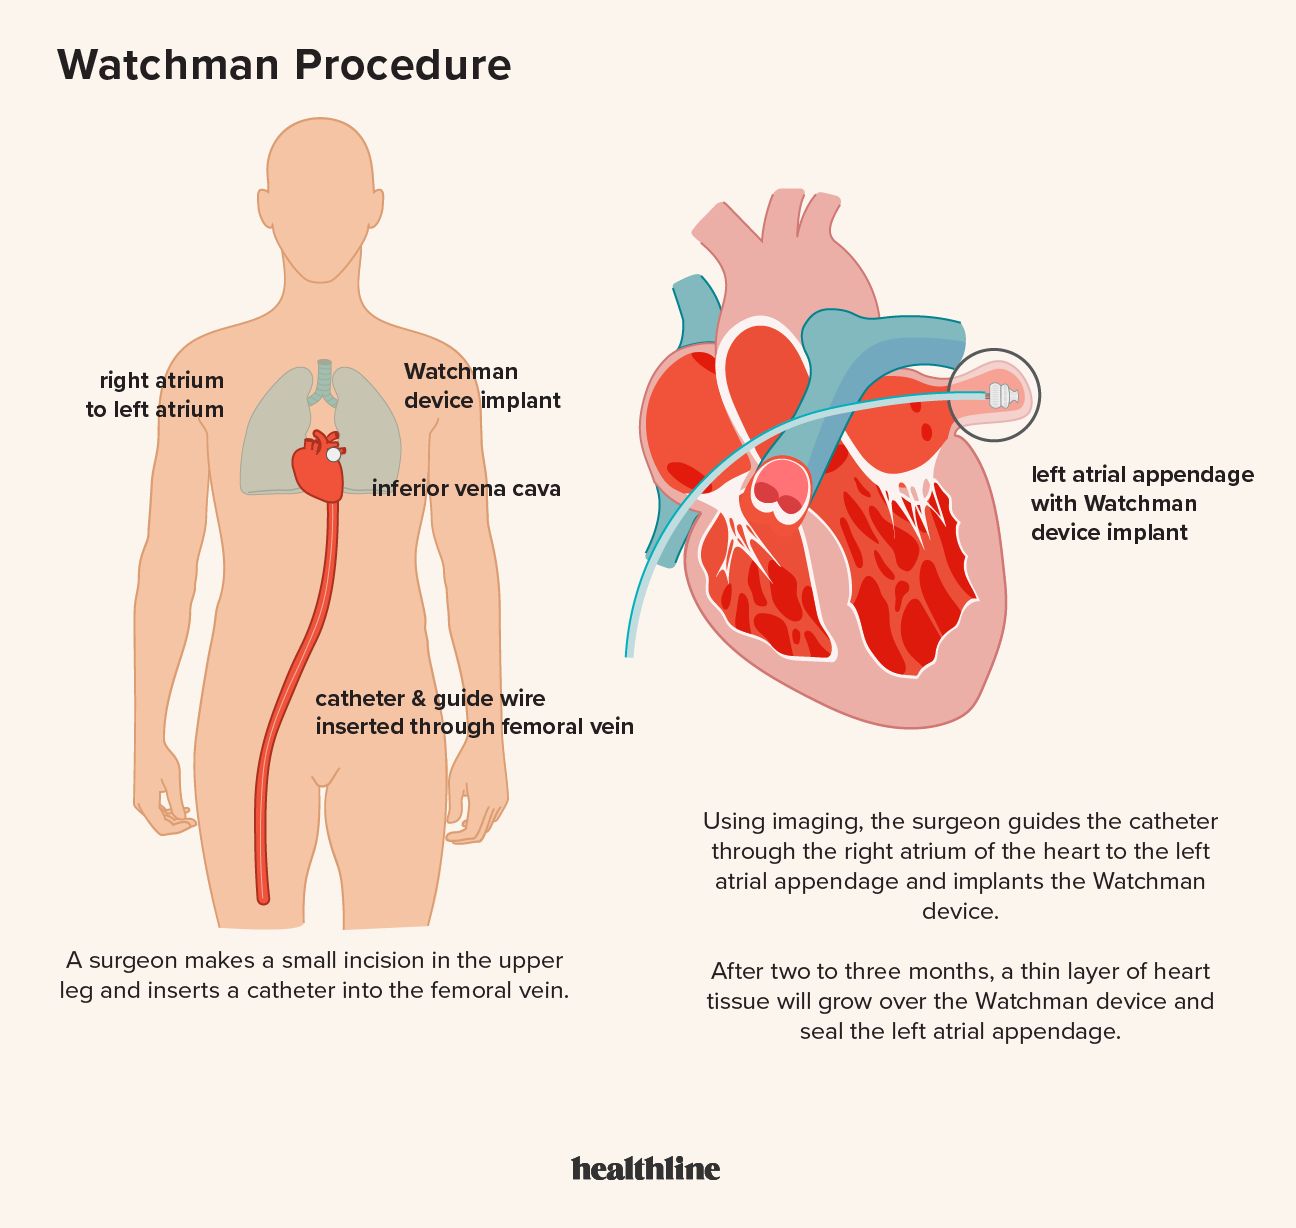 رسم توضيحي يوضح كيفية زرع جهاز Watchman